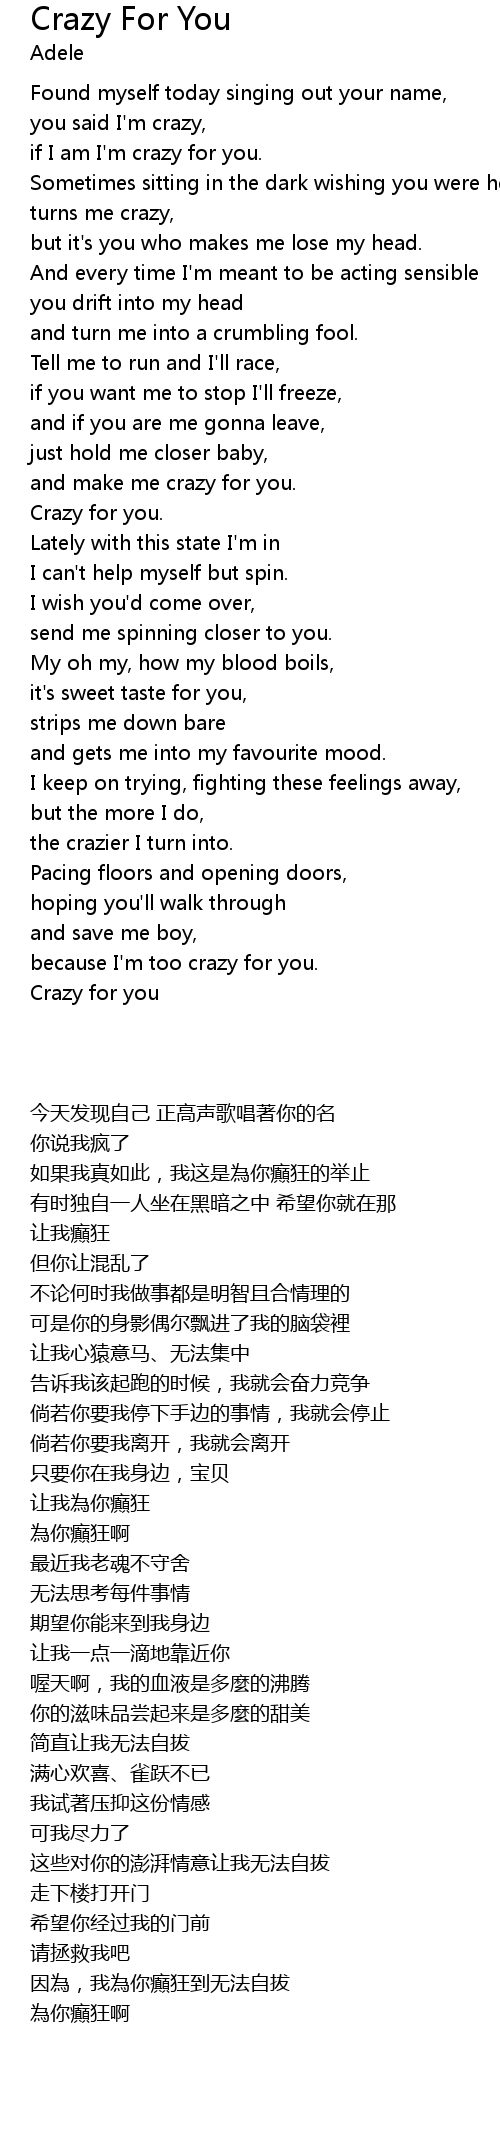 Crazy For You Lyrics Follow Lyrics